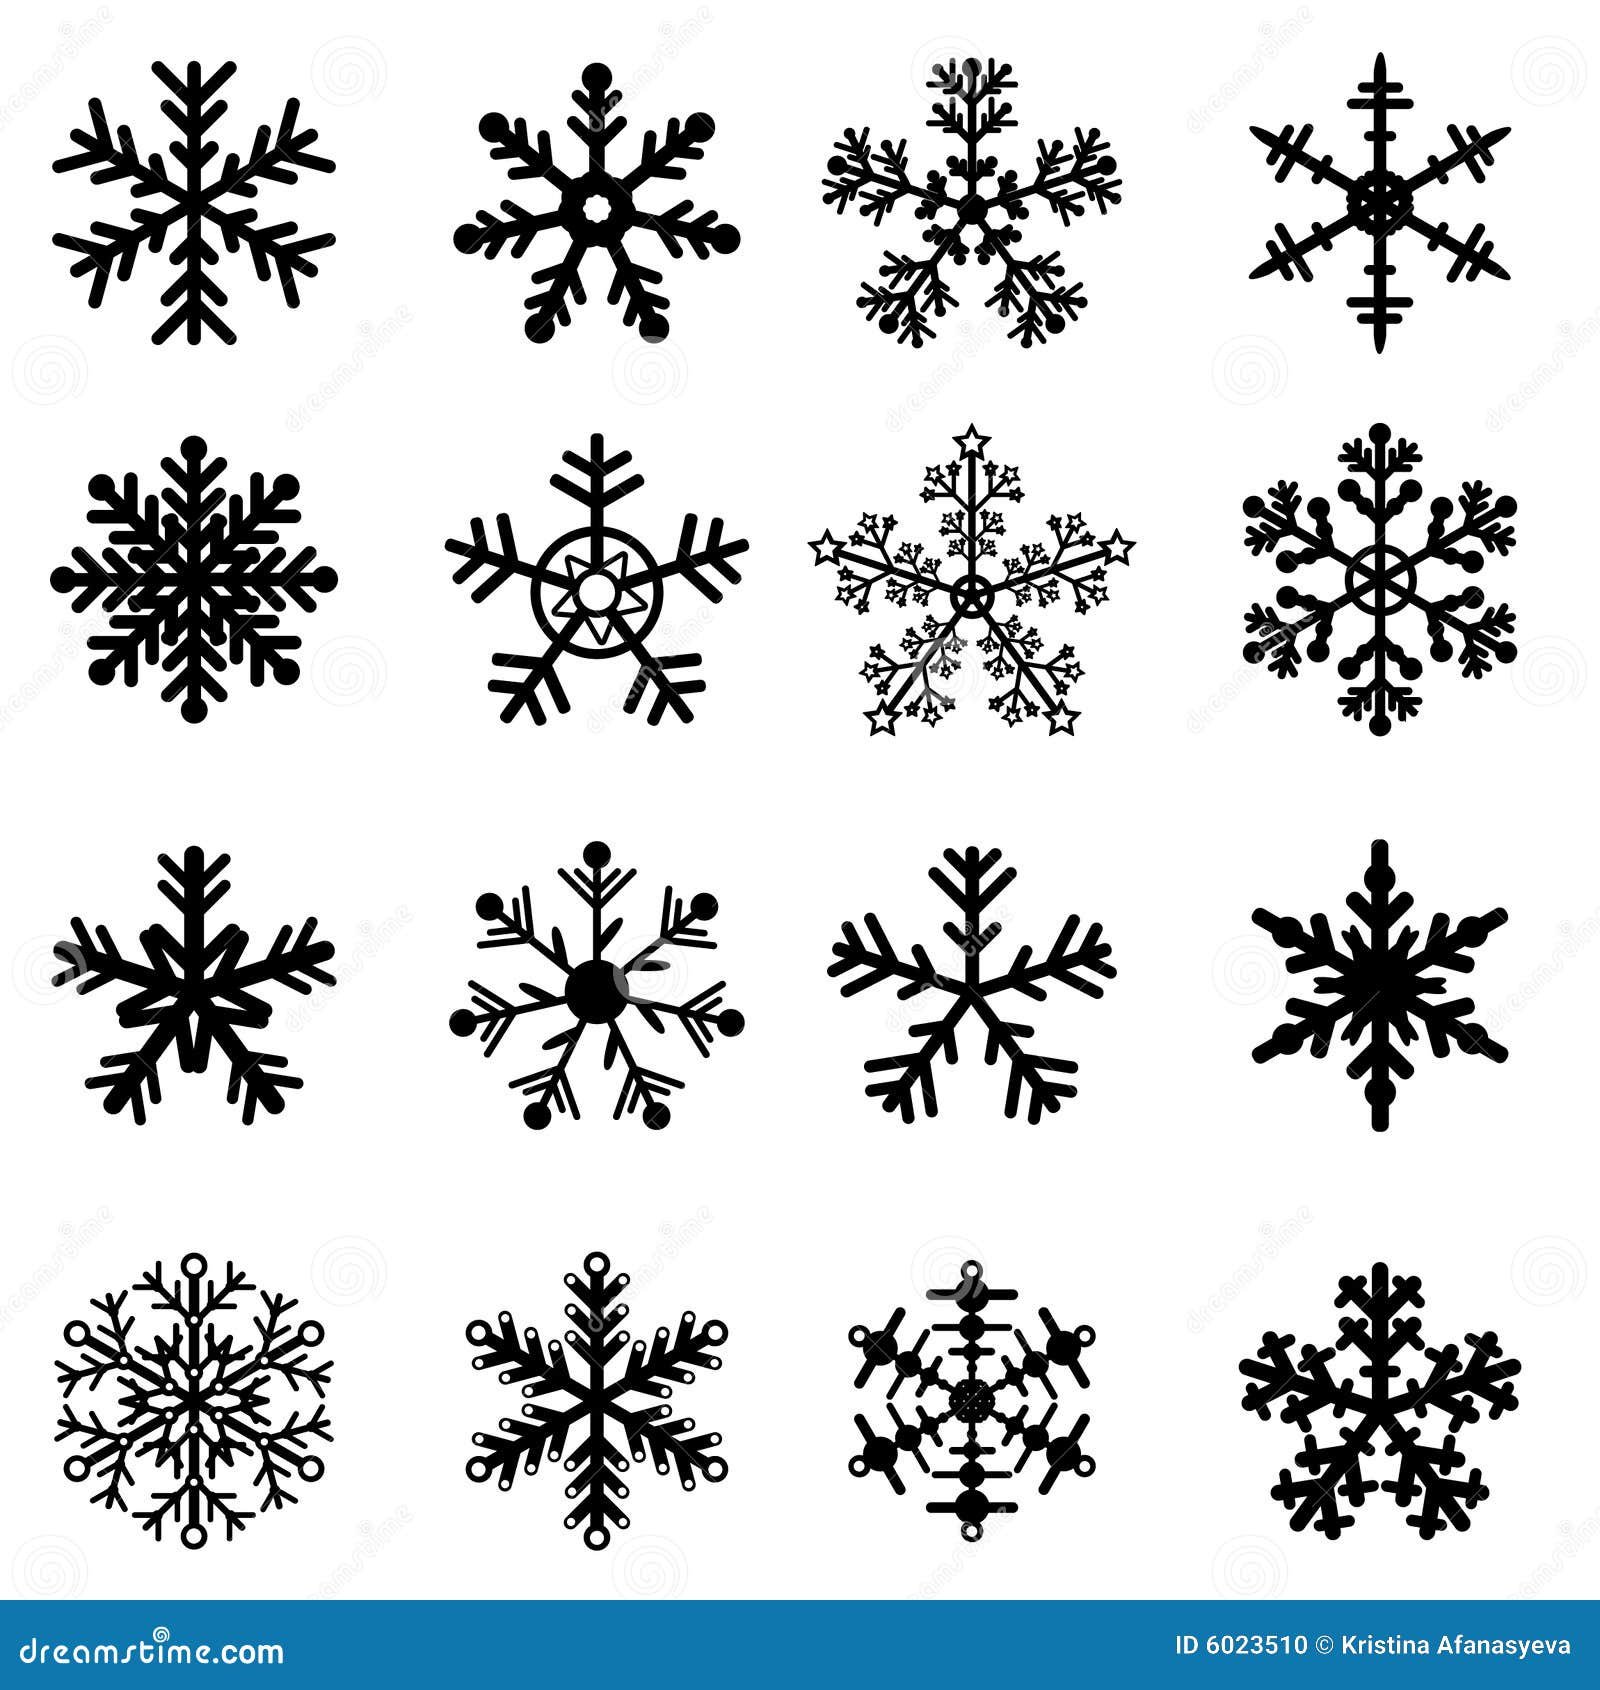 snowflake clipart free black white - photo #17